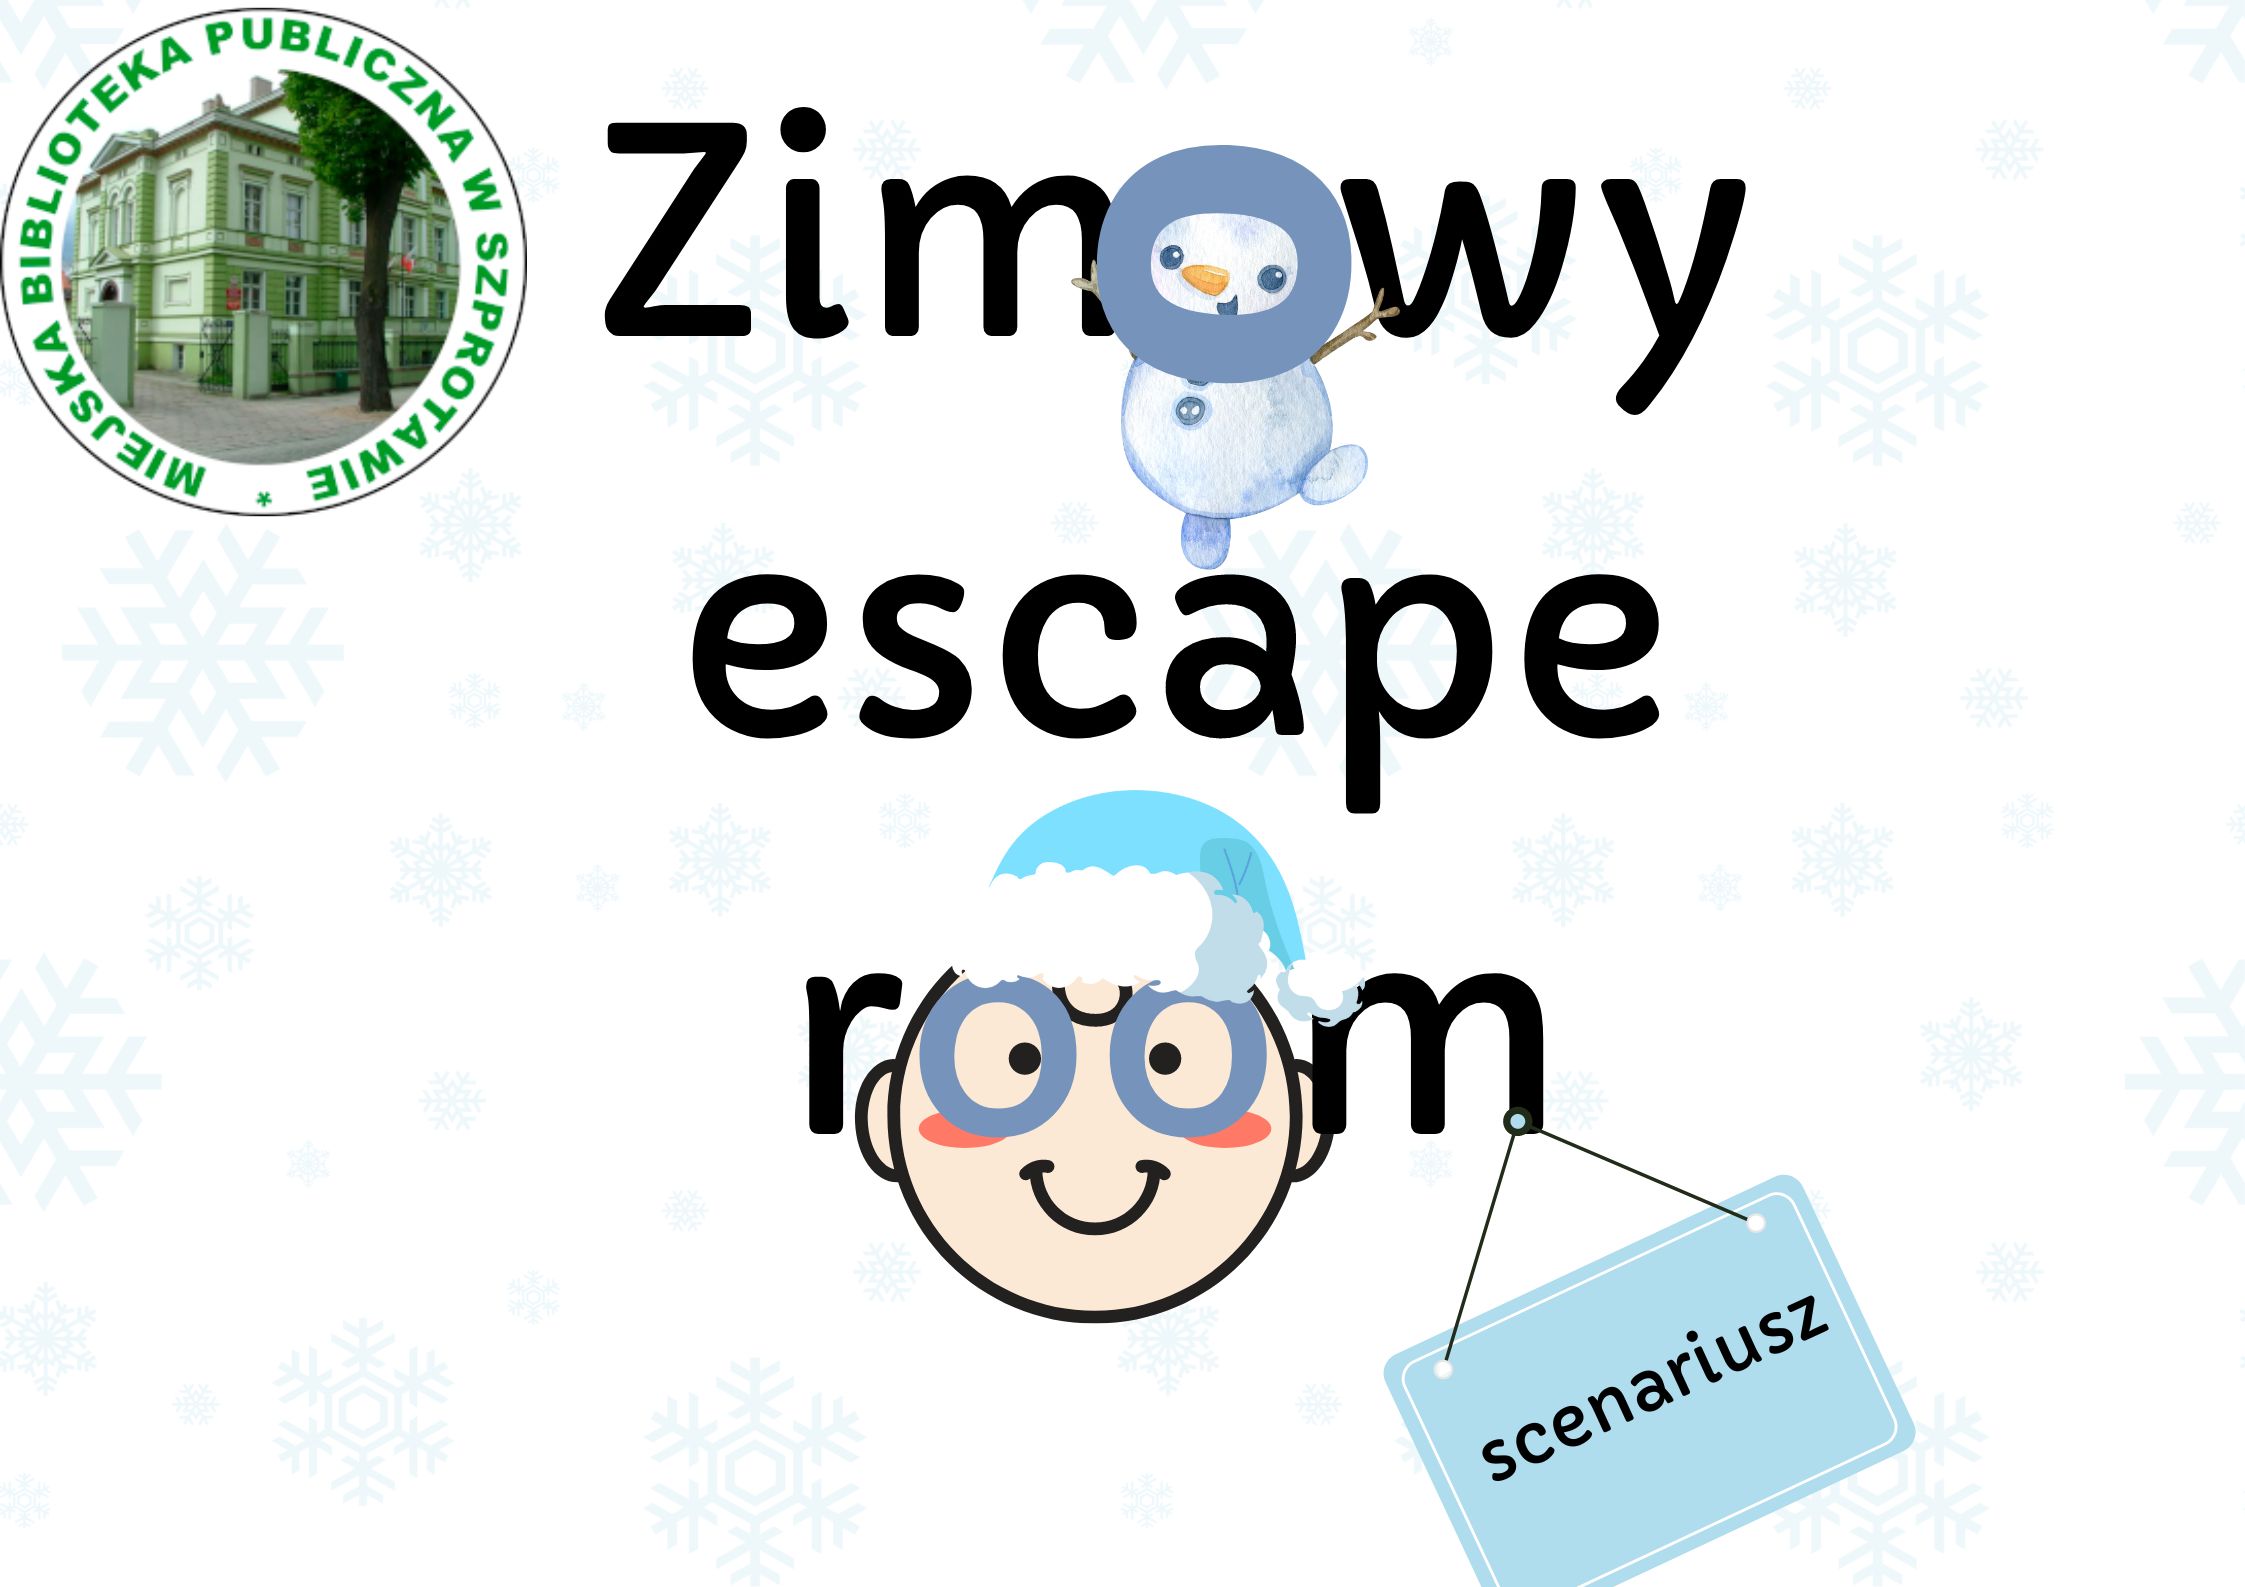 Napis "zimowy escape room" z grafiką przedstawiającą bałwanka i twarz chłopca i logo biblioteki.